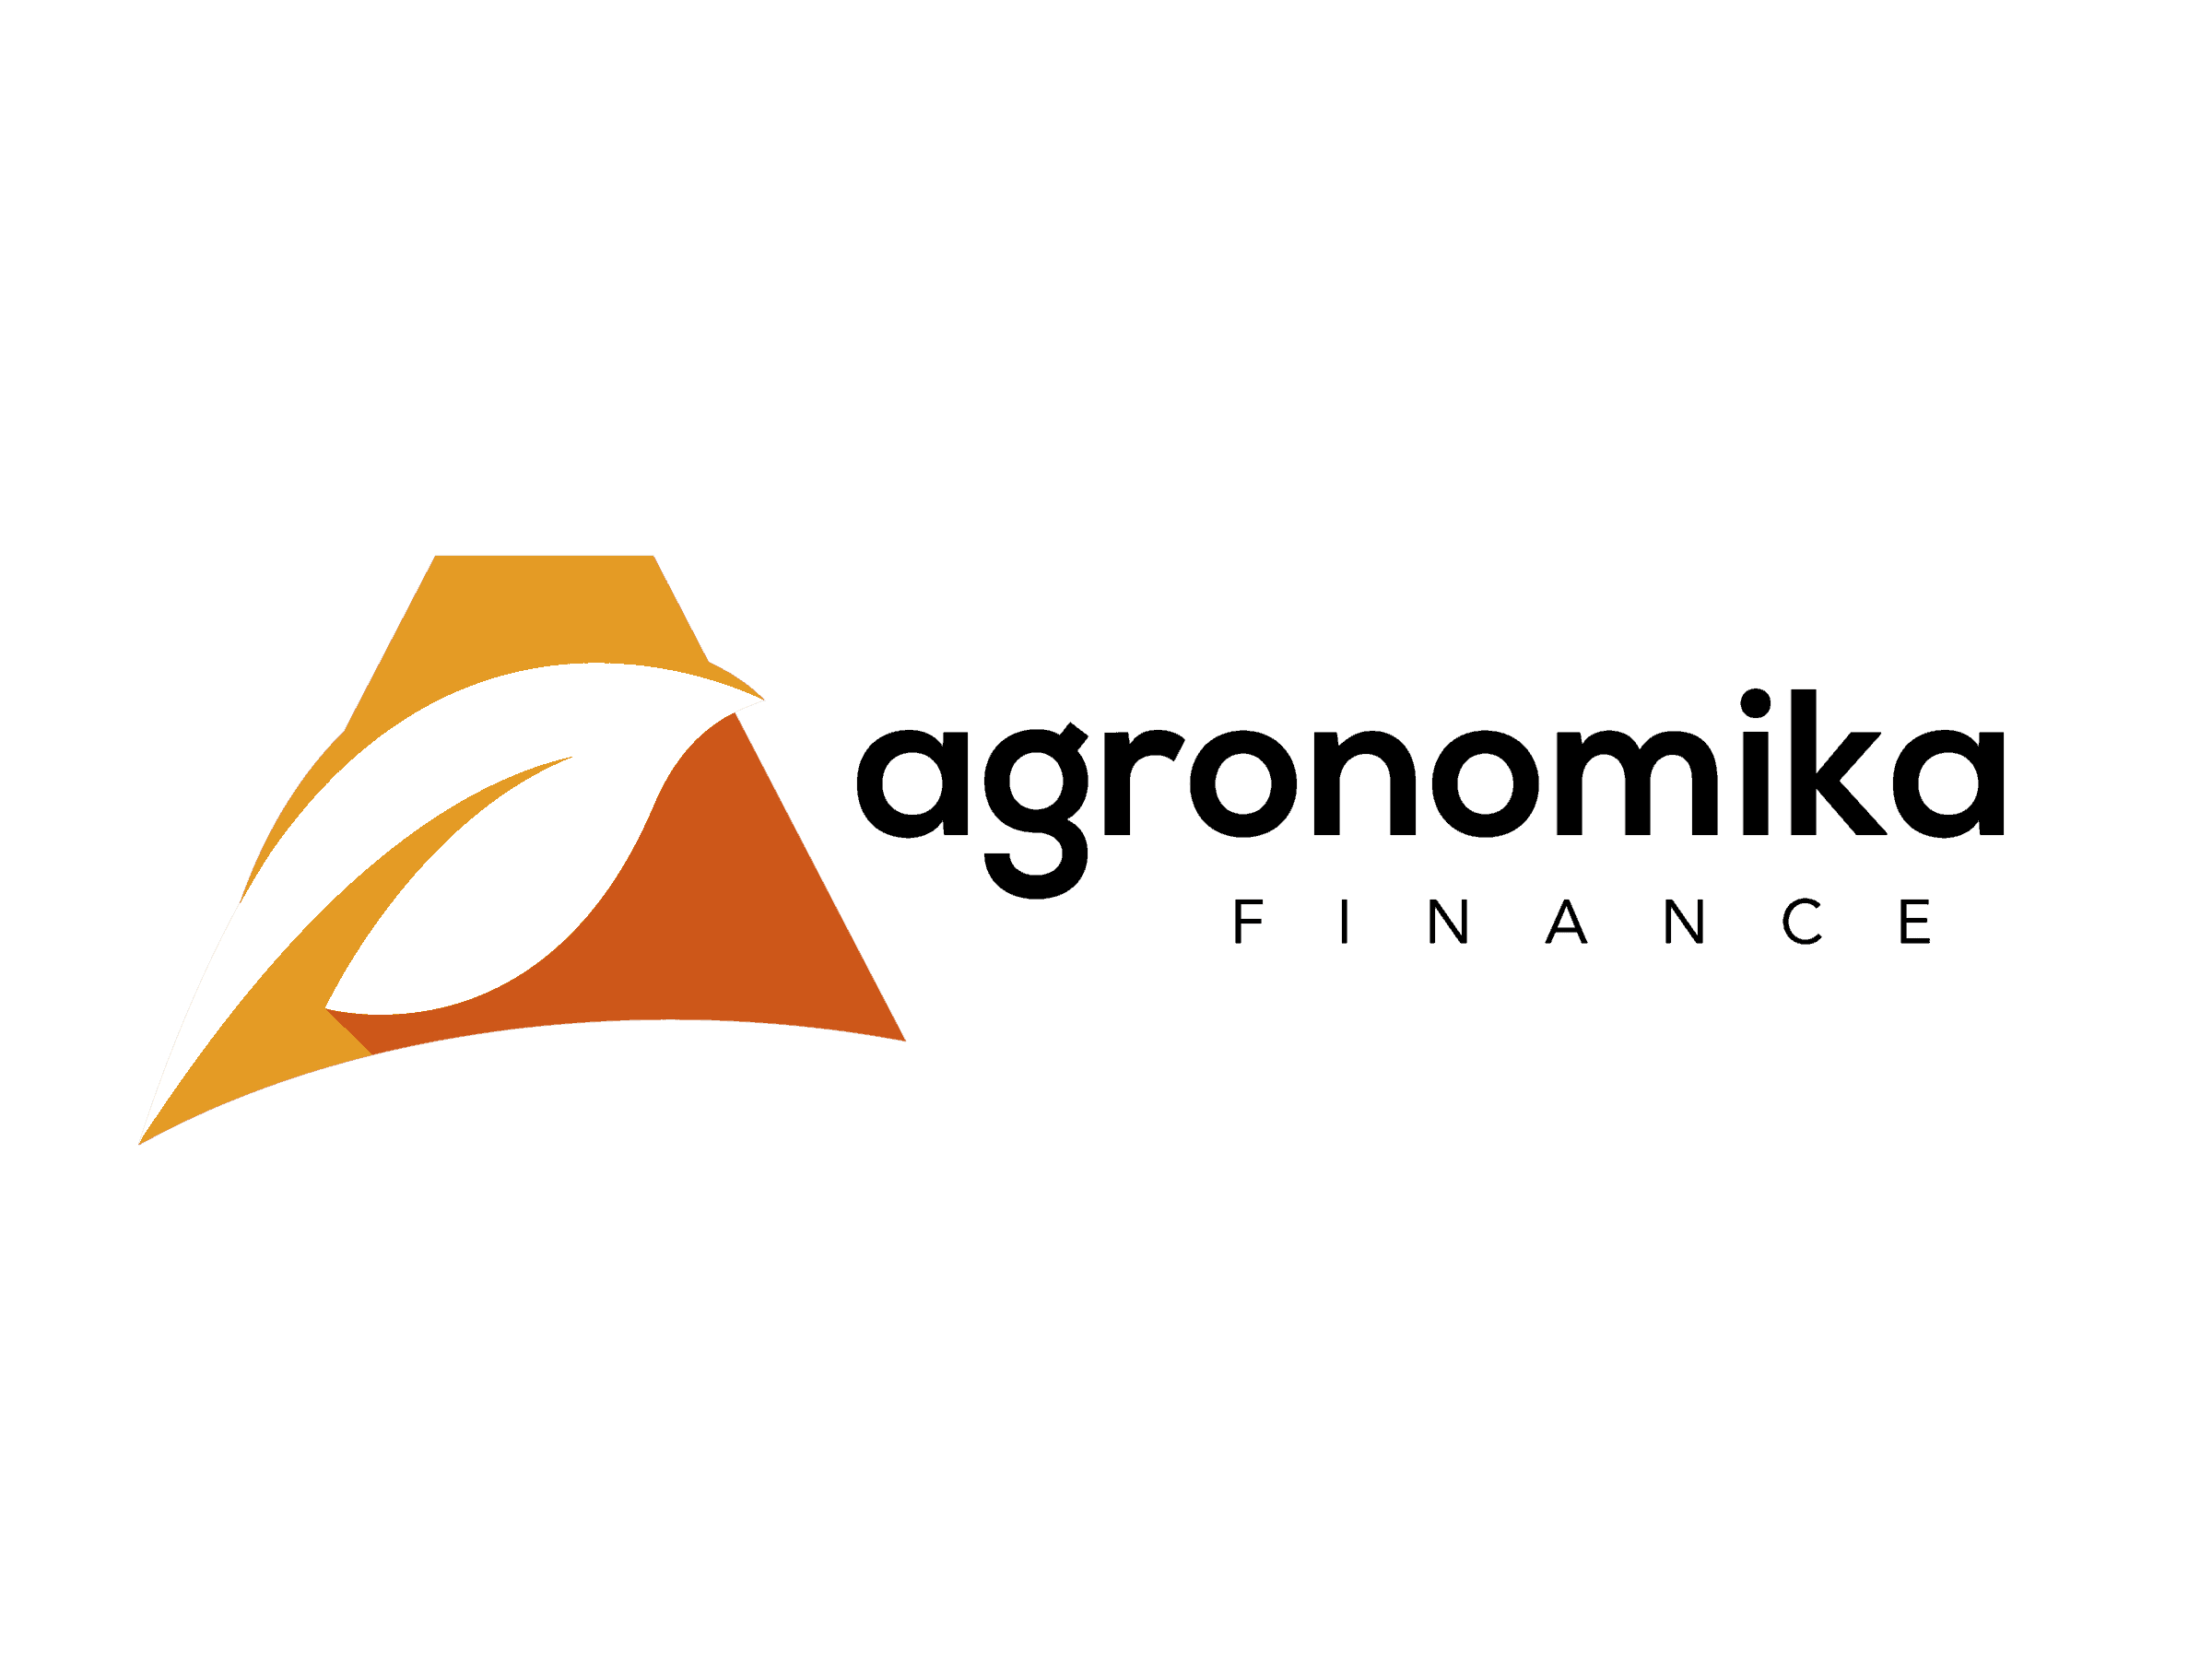 Agronomika logo